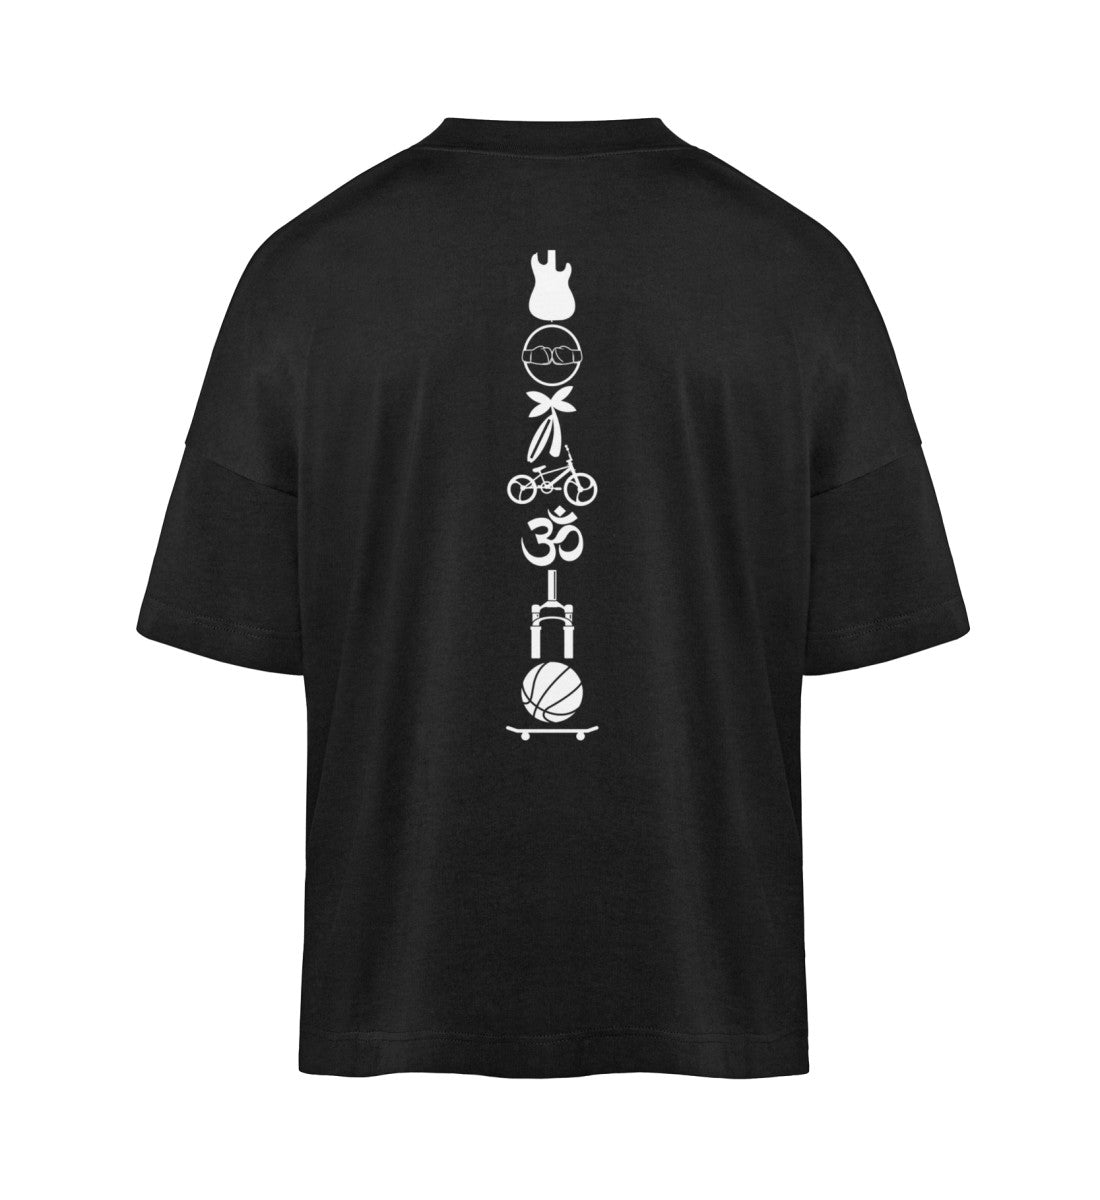 Schwarzes T-Shirt Unisex Oversize Fit für Frauen und Männer bedruckt mit dem Design der Roger Rockawoo Kollektion Icons